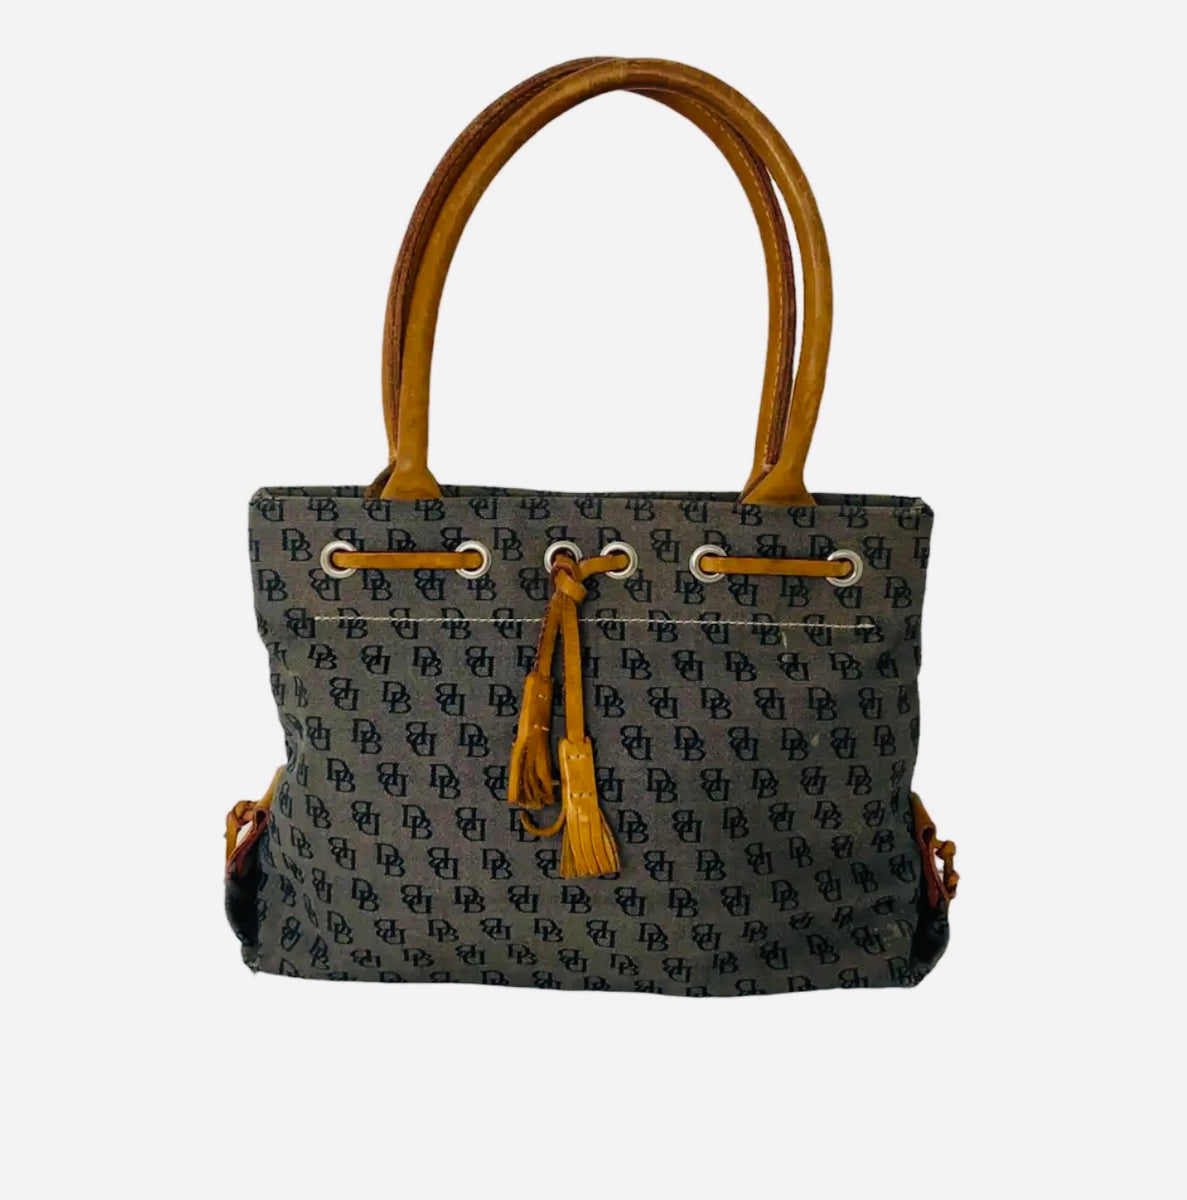 100% Authentic Vintage Dooney & Bourke Handbag for Sale in